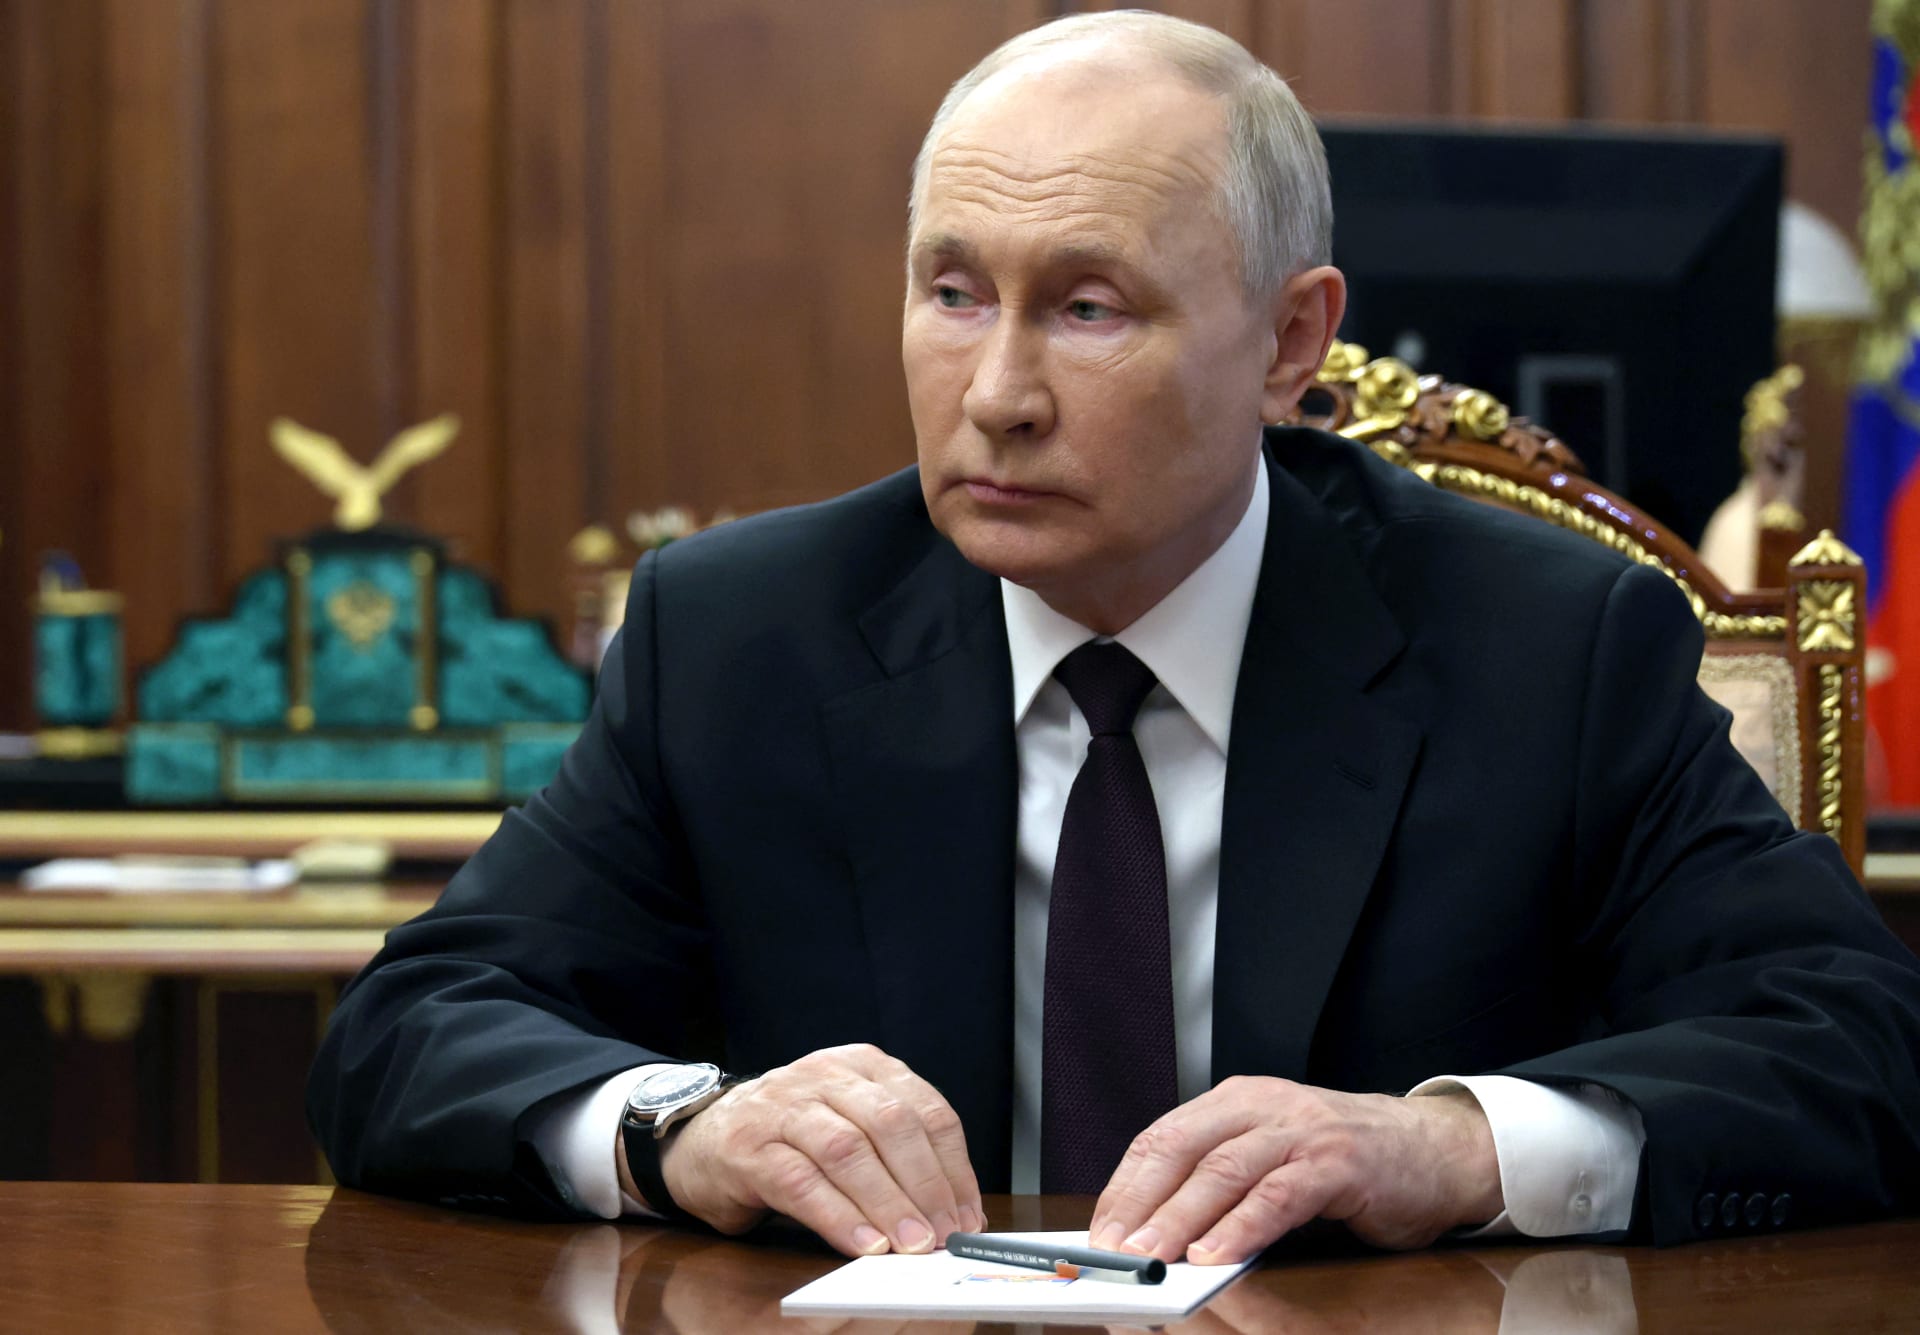 "بوتين يصدم واشنطن".. تفاعل على تصريح رئيس روسيا عن "التخلي عن الدولار كعملة عالمية عملية لا رجعة فيها"